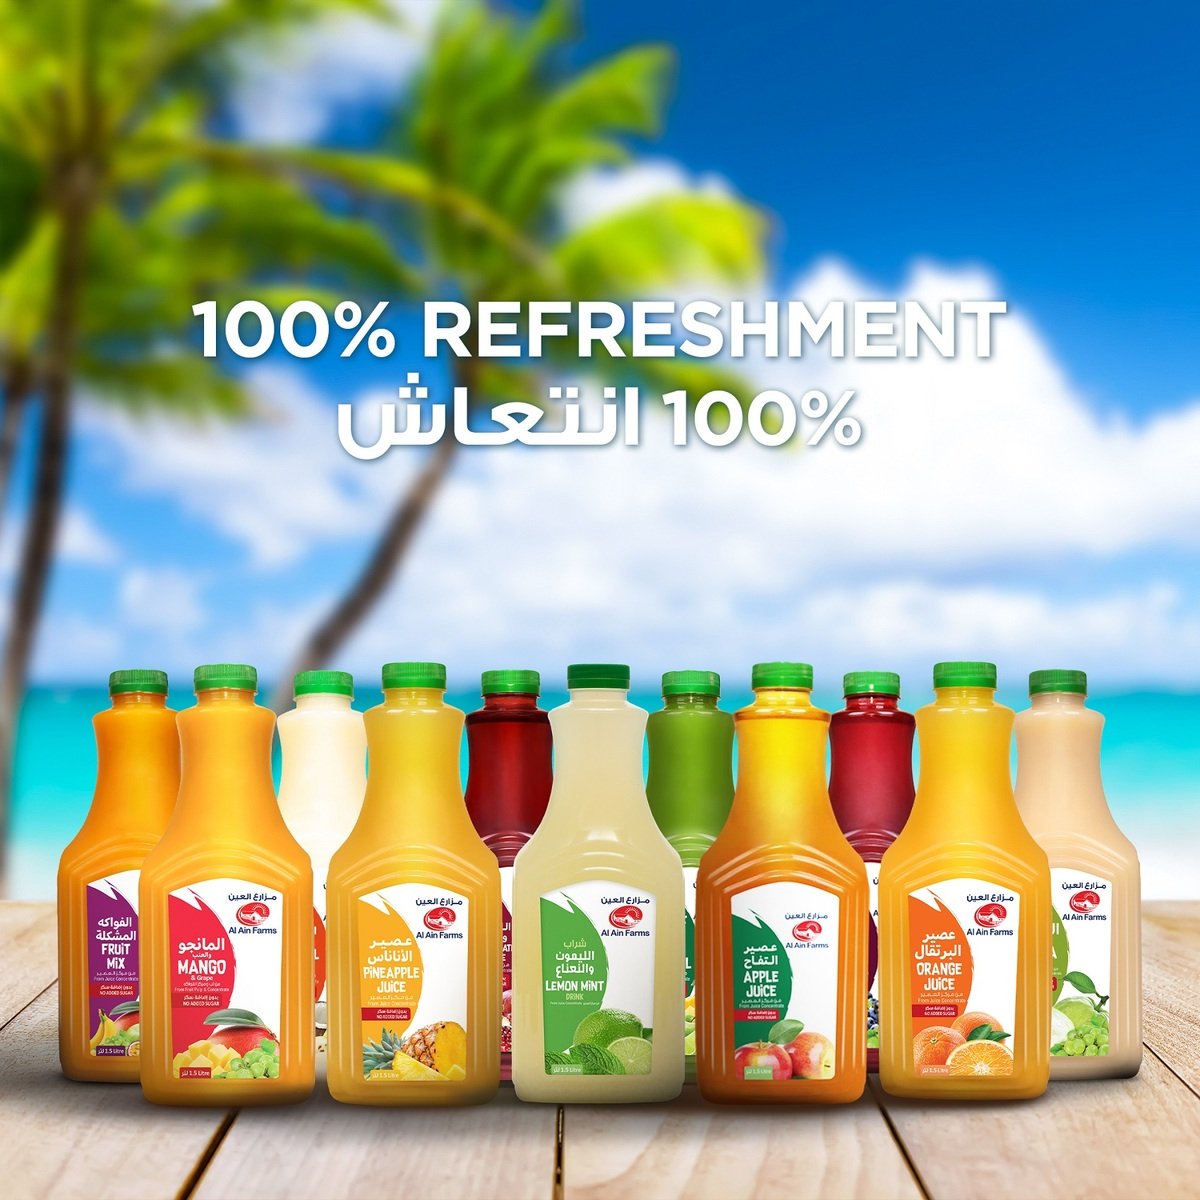 Al Ain Pineapple Juice 500 ml